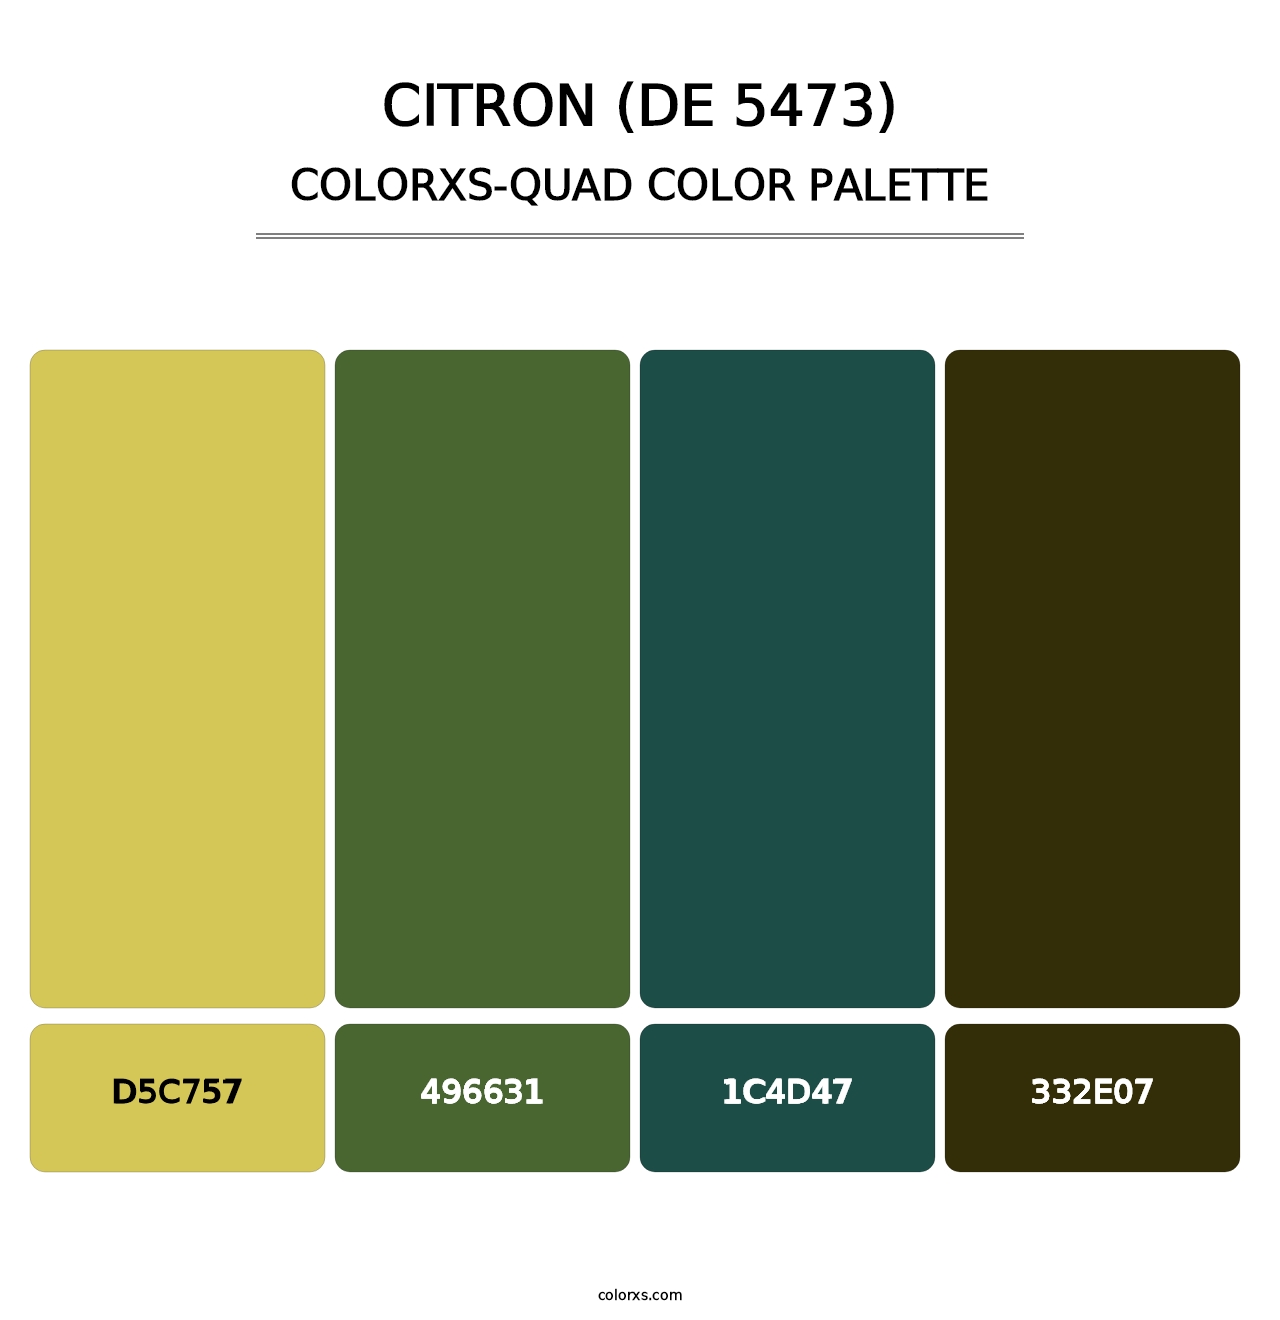 Citron (DE 5473) - Colorxs Quad Palette